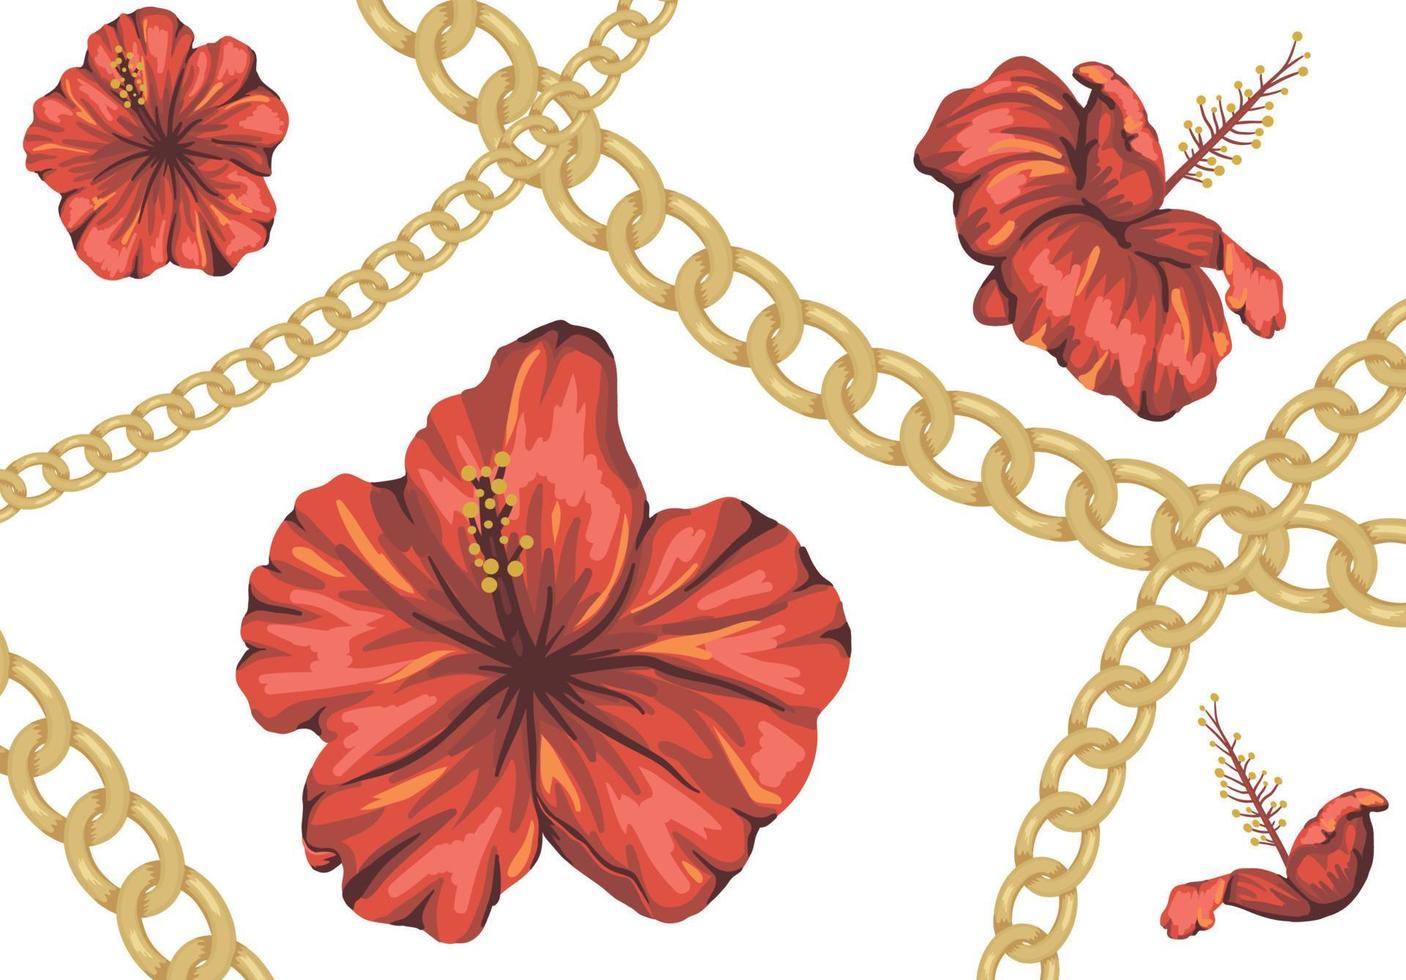 fond tropical de vecteur avec des fleurs d'hibiscus rouges et une chaîne dorée. toile de fond de la jungle d'été. illustration tropique vintage